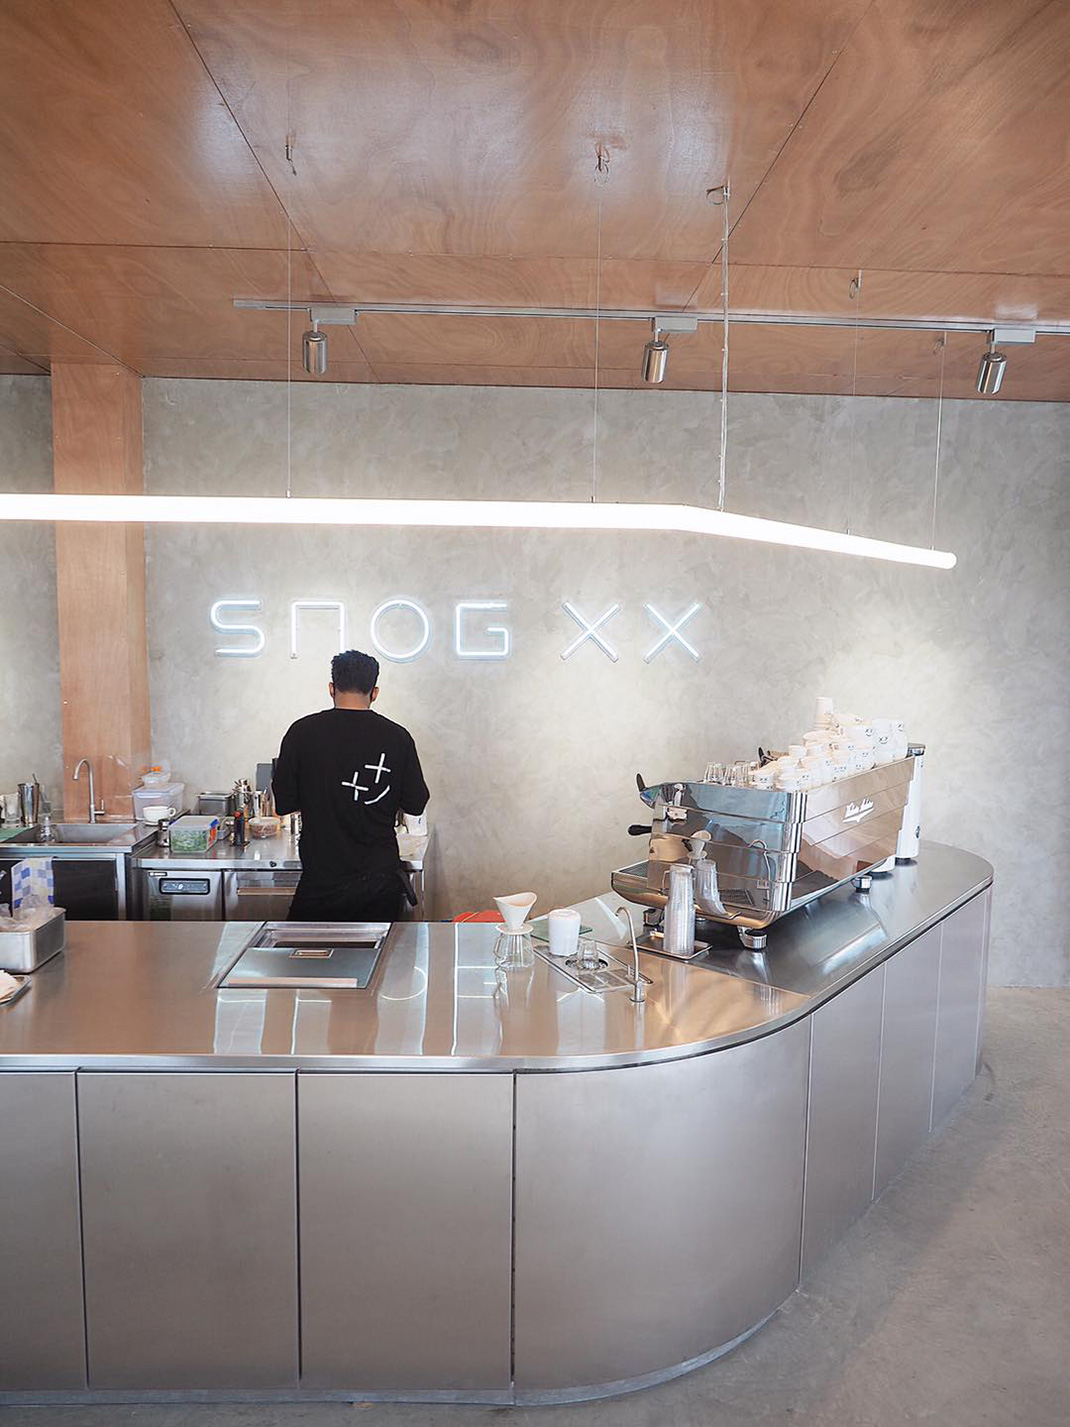 泰国咖啡馆Snog XX 泰国 曼谷 咖啡厅 cafe 打开店 网红店 logo设计 vi设计 空间设计 视觉餐饮